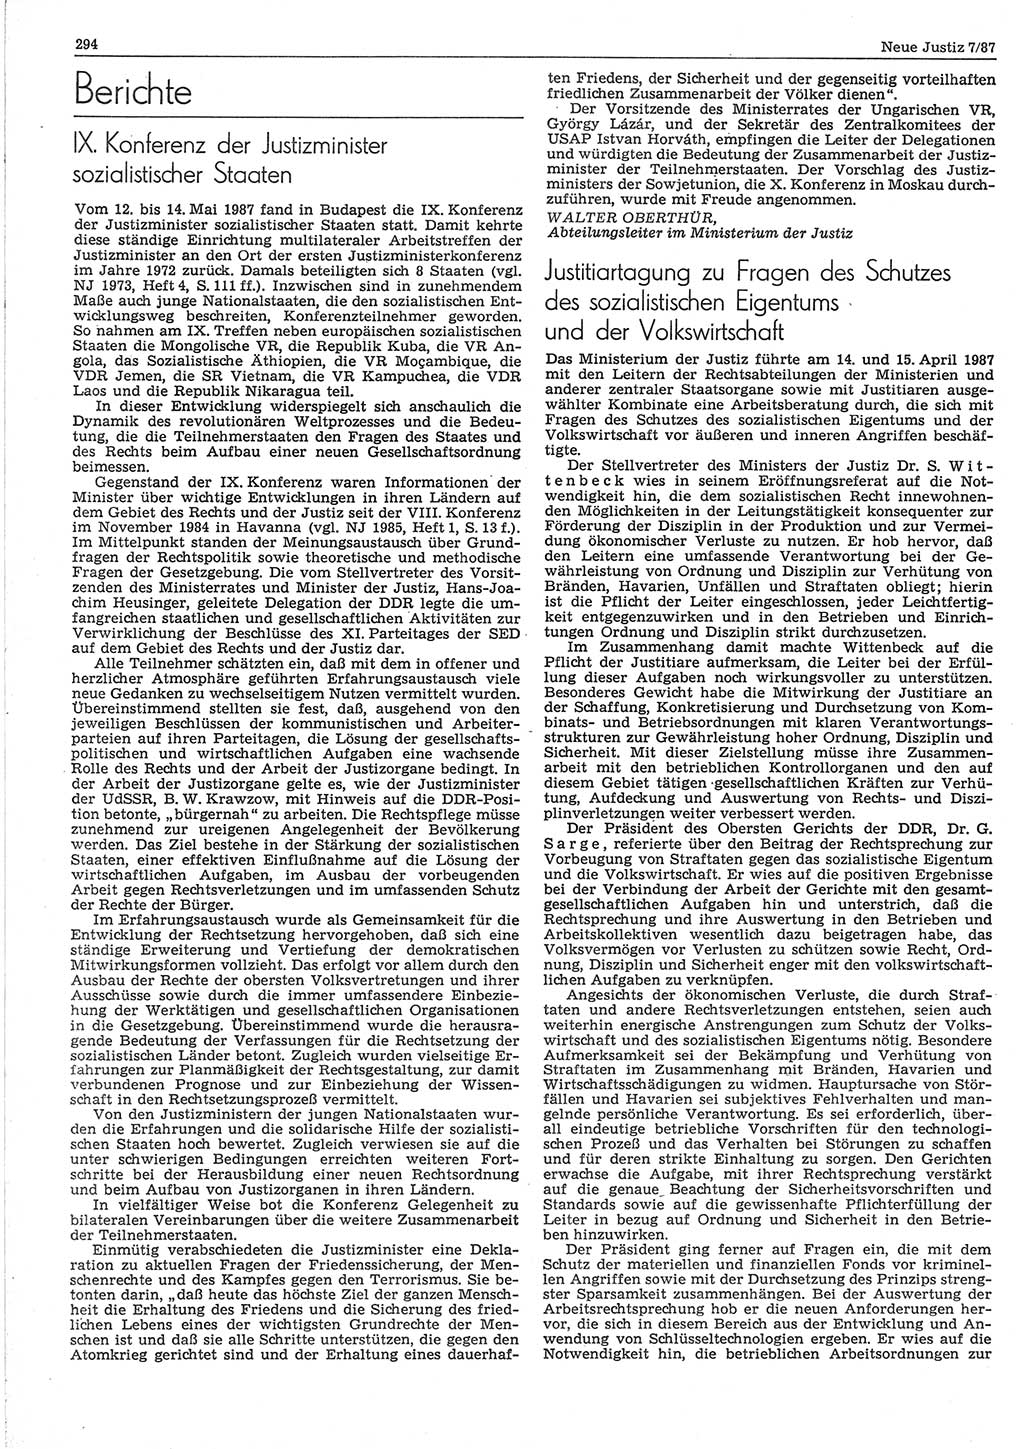 Neue Justiz (NJ), Zeitschrift für sozialistisches Recht und Gesetzlichkeit [Deutsche Demokratische Republik (DDR)], 41. Jahrgang 1987, Seite 294 (NJ DDR 1987, S. 294)